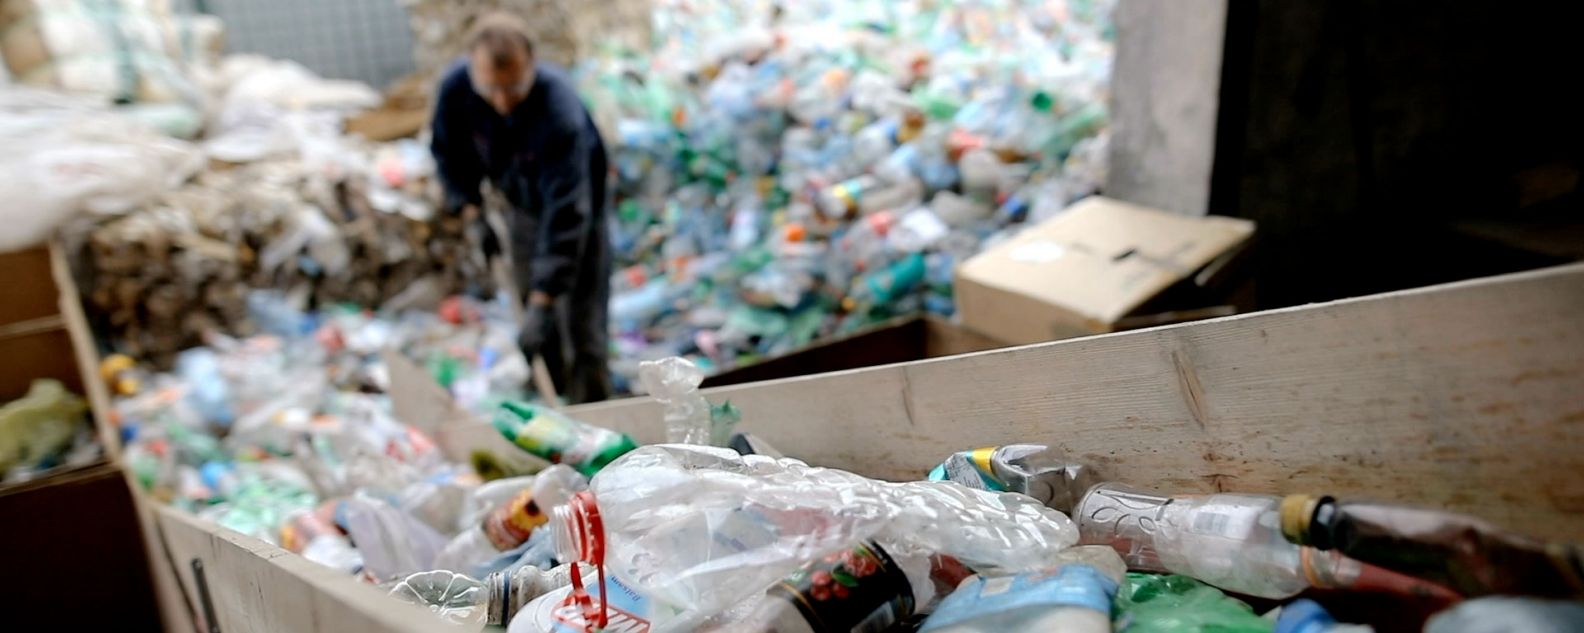 In einer Recyclingfabrik schaufelt ein Arbeiter mit einer Schaufel Plastikflaschen zum Recycling